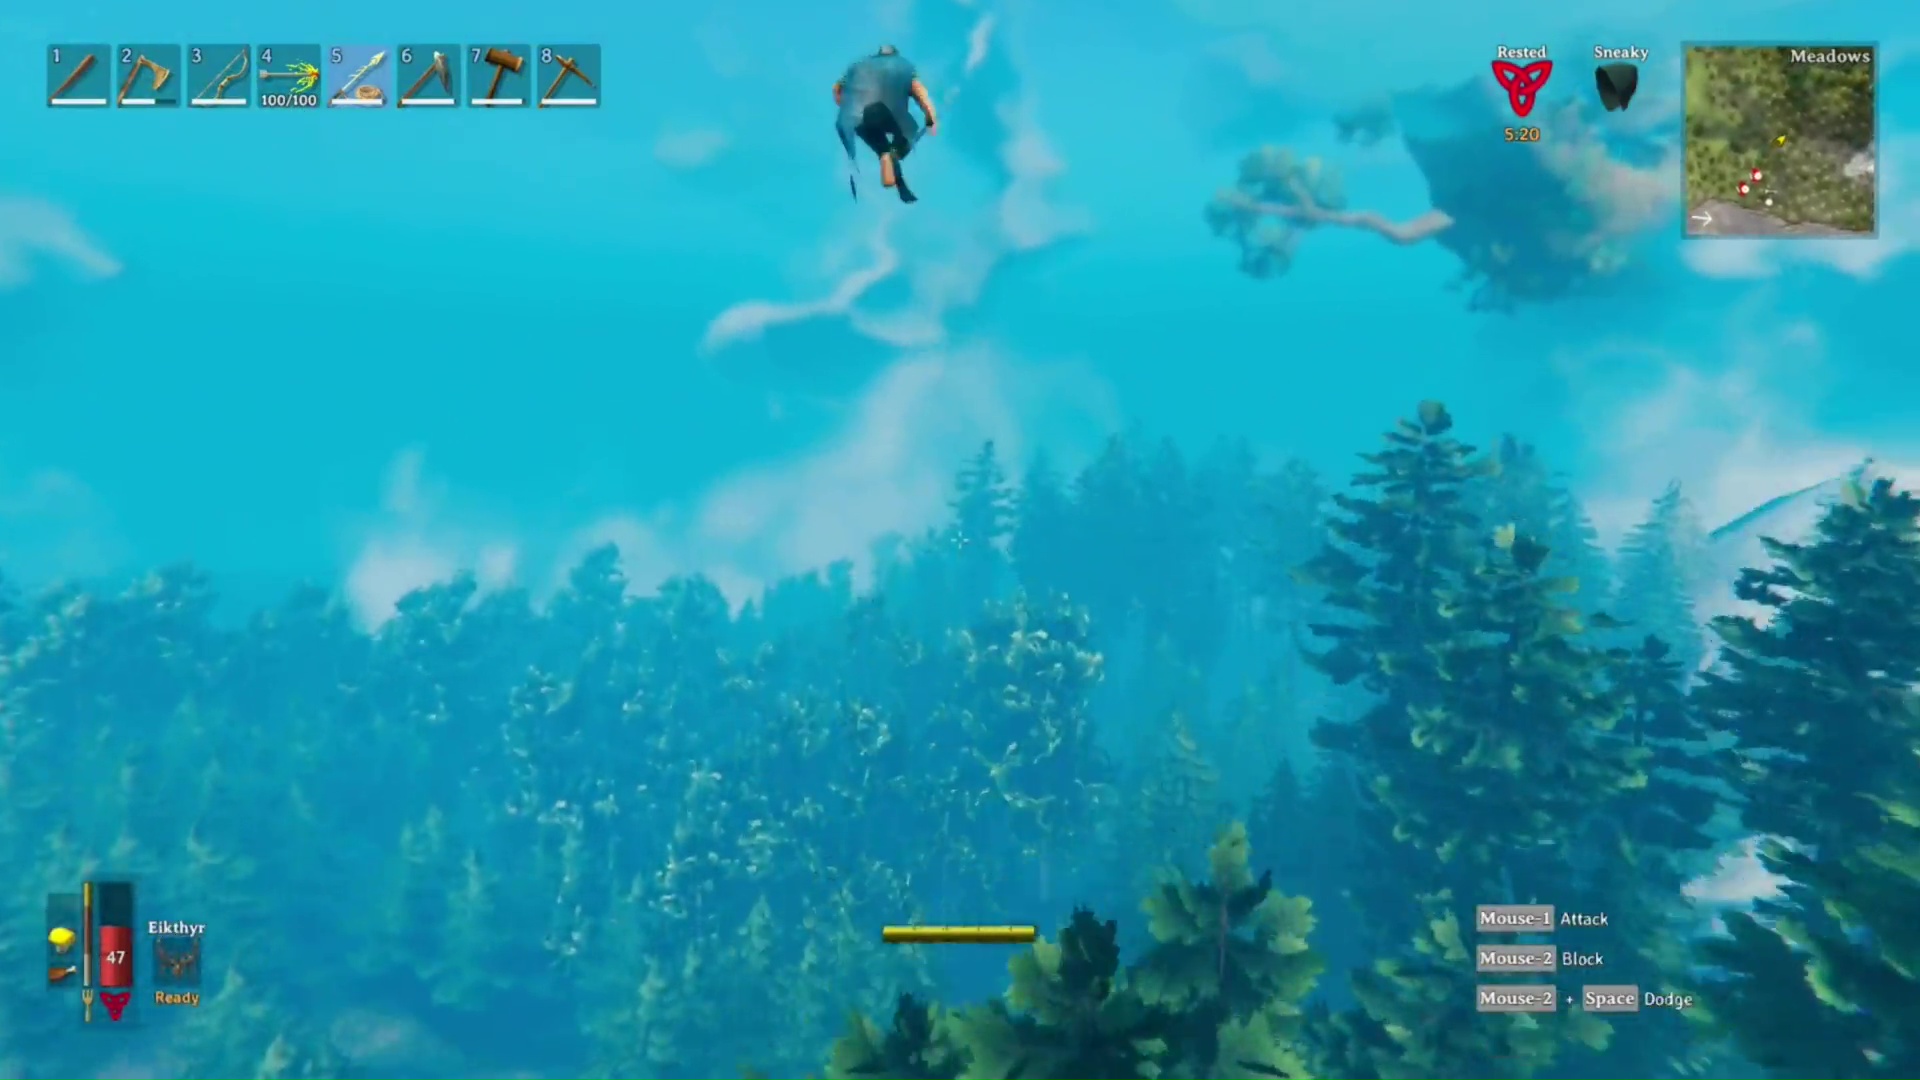 『Valheim』のプレイヤーが独創的なアイデアで空を飛ぶ。ハープーンを使ってパチンコの要領で飛んでいく豪快な「バイキング宇宙計画」が流行中_001